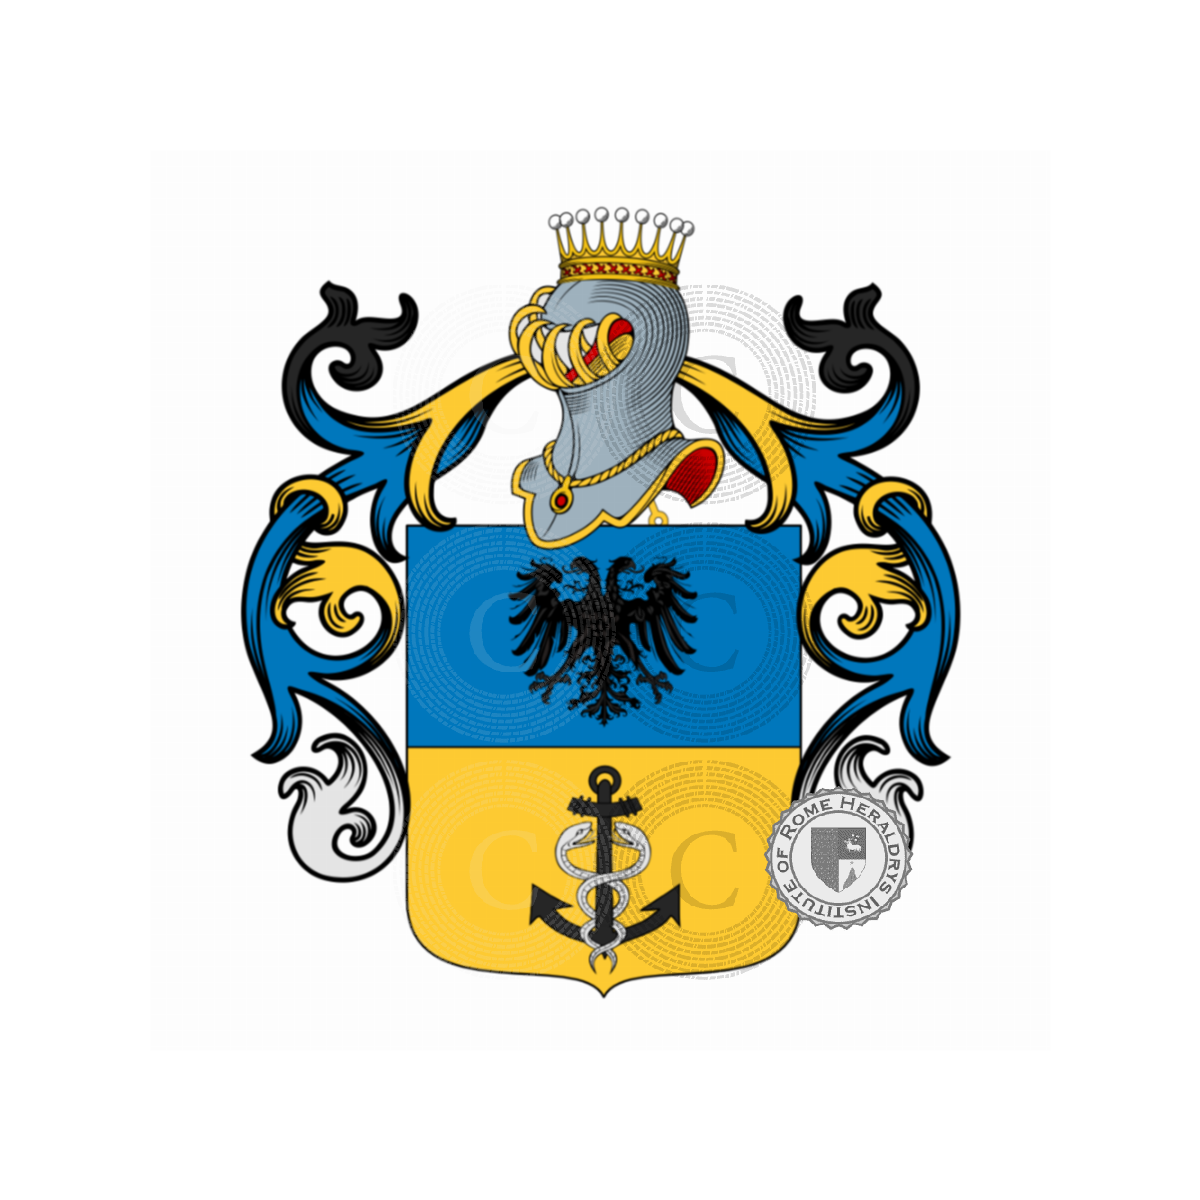 Wappen der Familiede Magistris, de magistris,dei Magistris